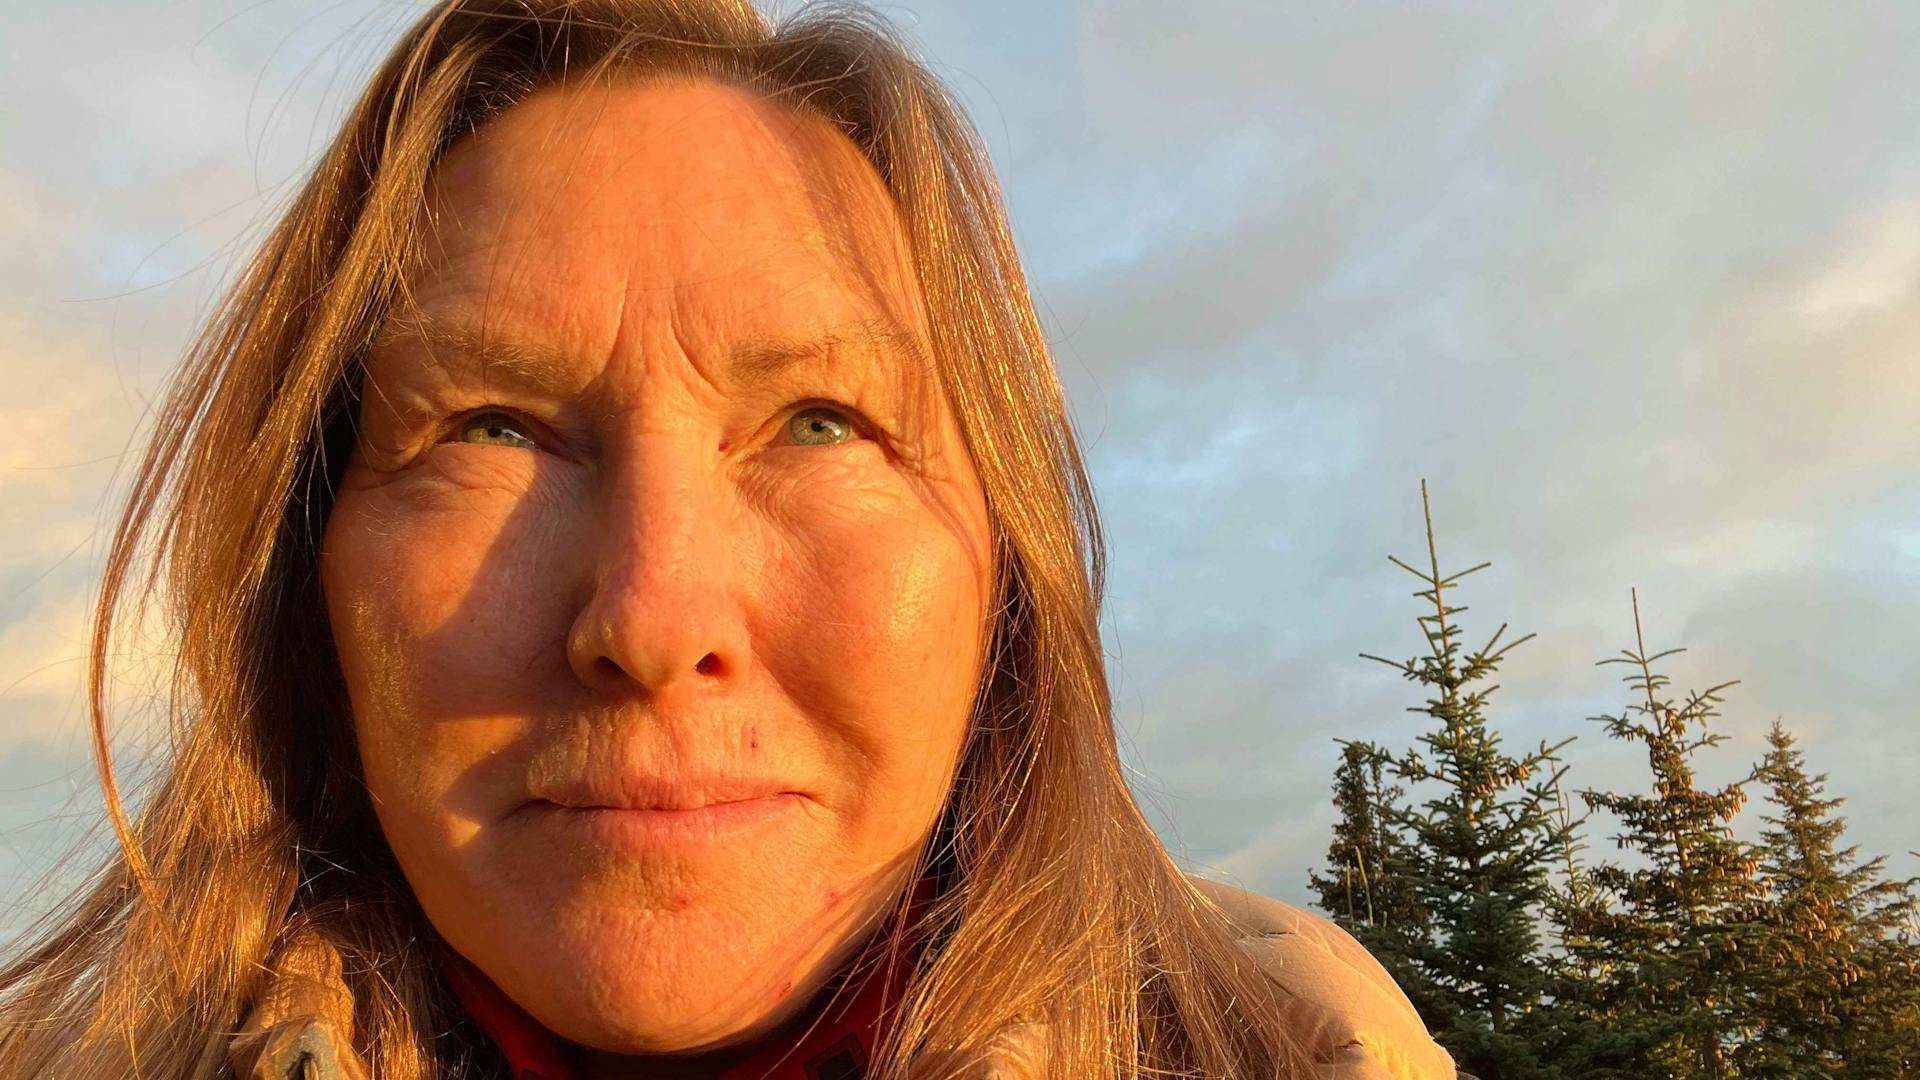 Gramma Kat Haber stands up for Alaska National Wildlife Refuge